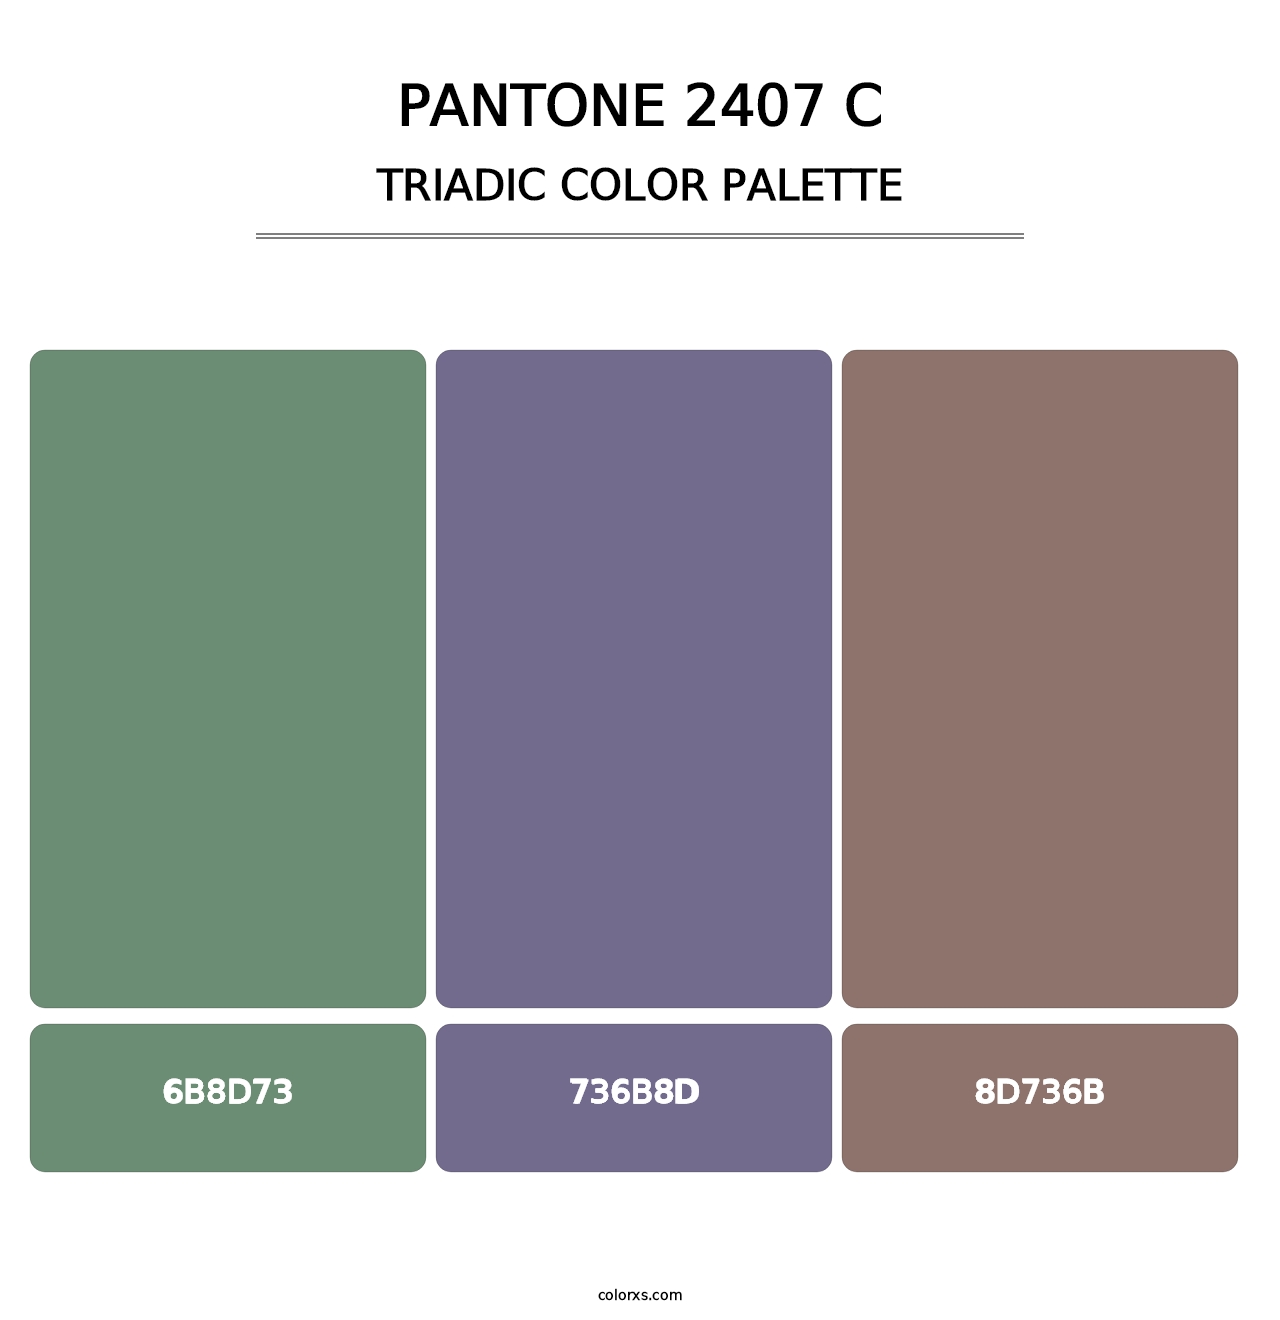 PANTONE 2407 C - Triadic Color Palette